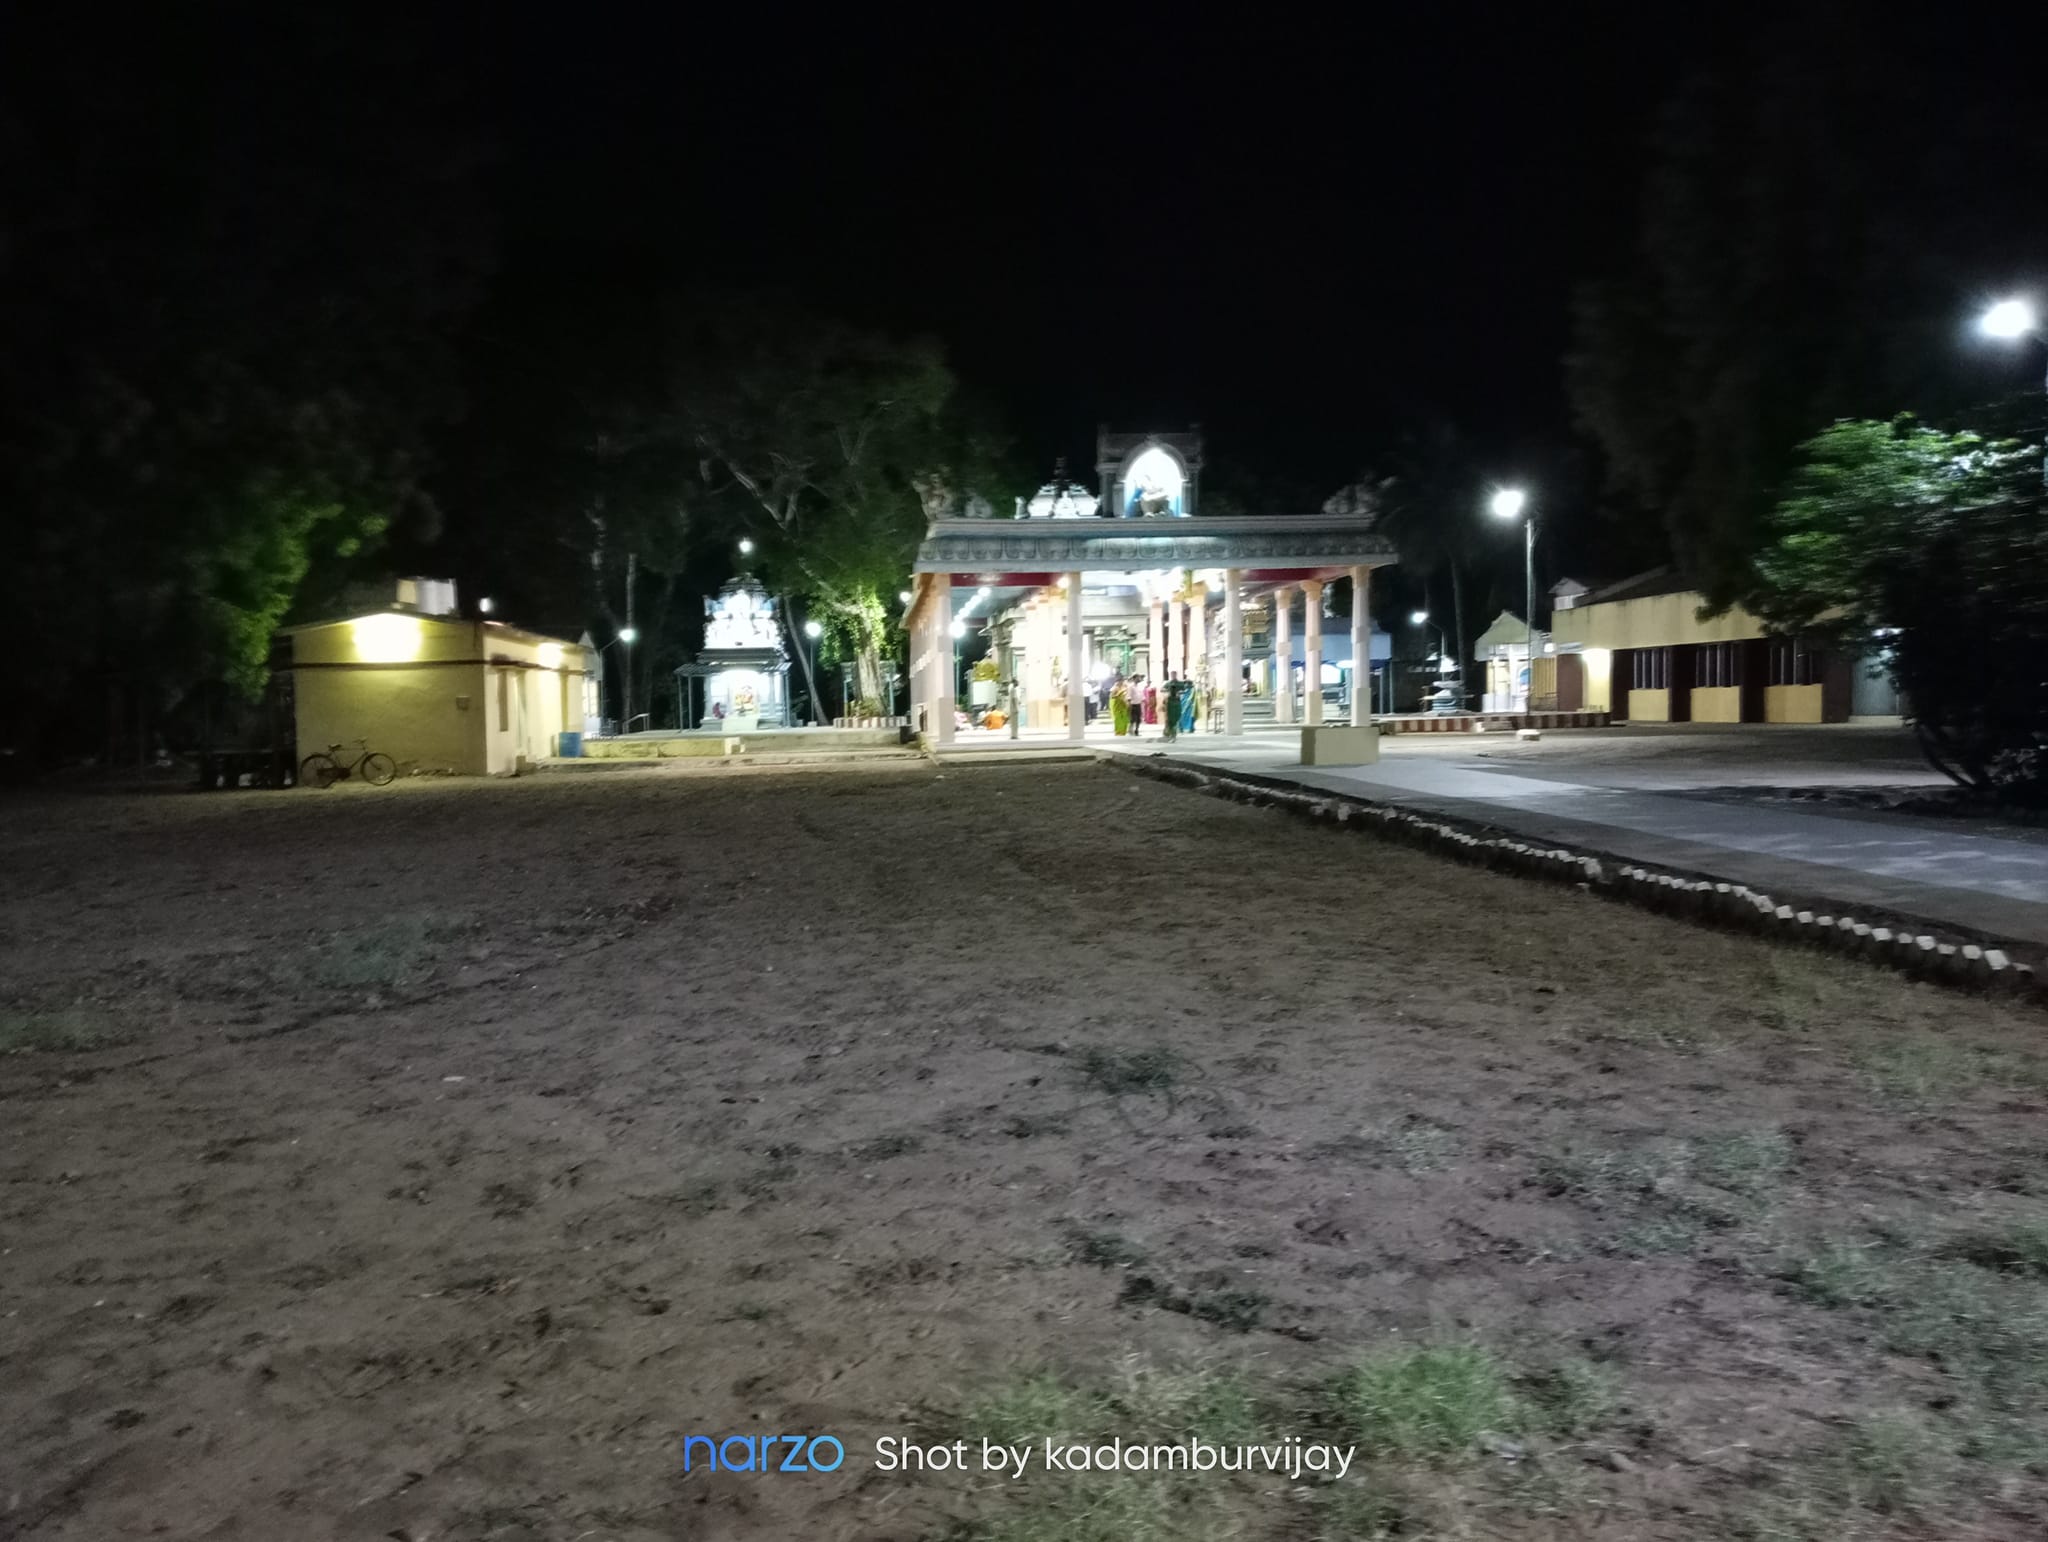 முத்தையாபுரம் ஸ்பிக் நகர் விநாயகர் திருக்கோயில், தூத்துக்குடி